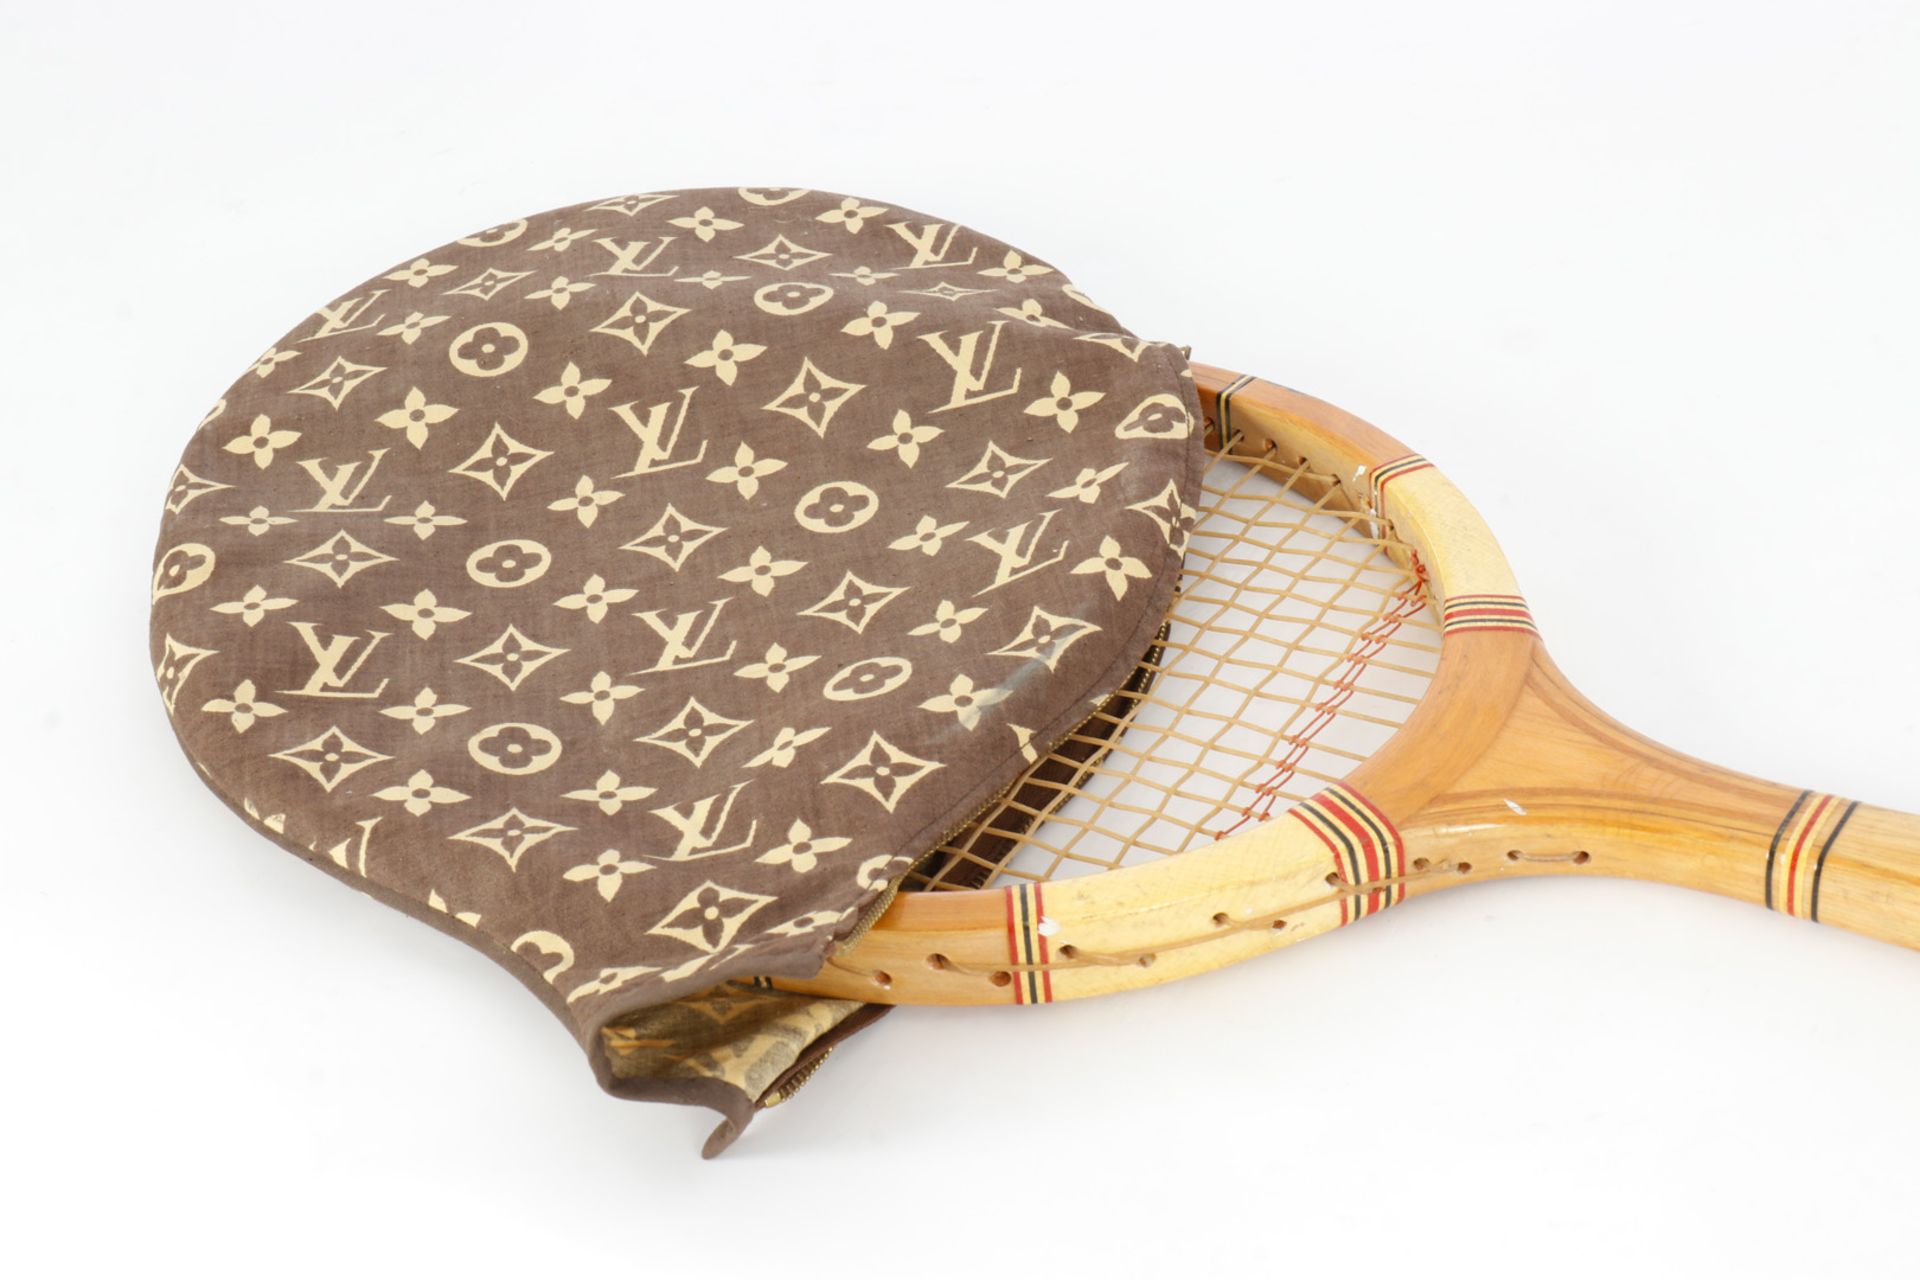 Benaglio Tennisschläger mit Louis Vuitton Schutzhülle aus Stoff, L 70 - Image 2 of 2